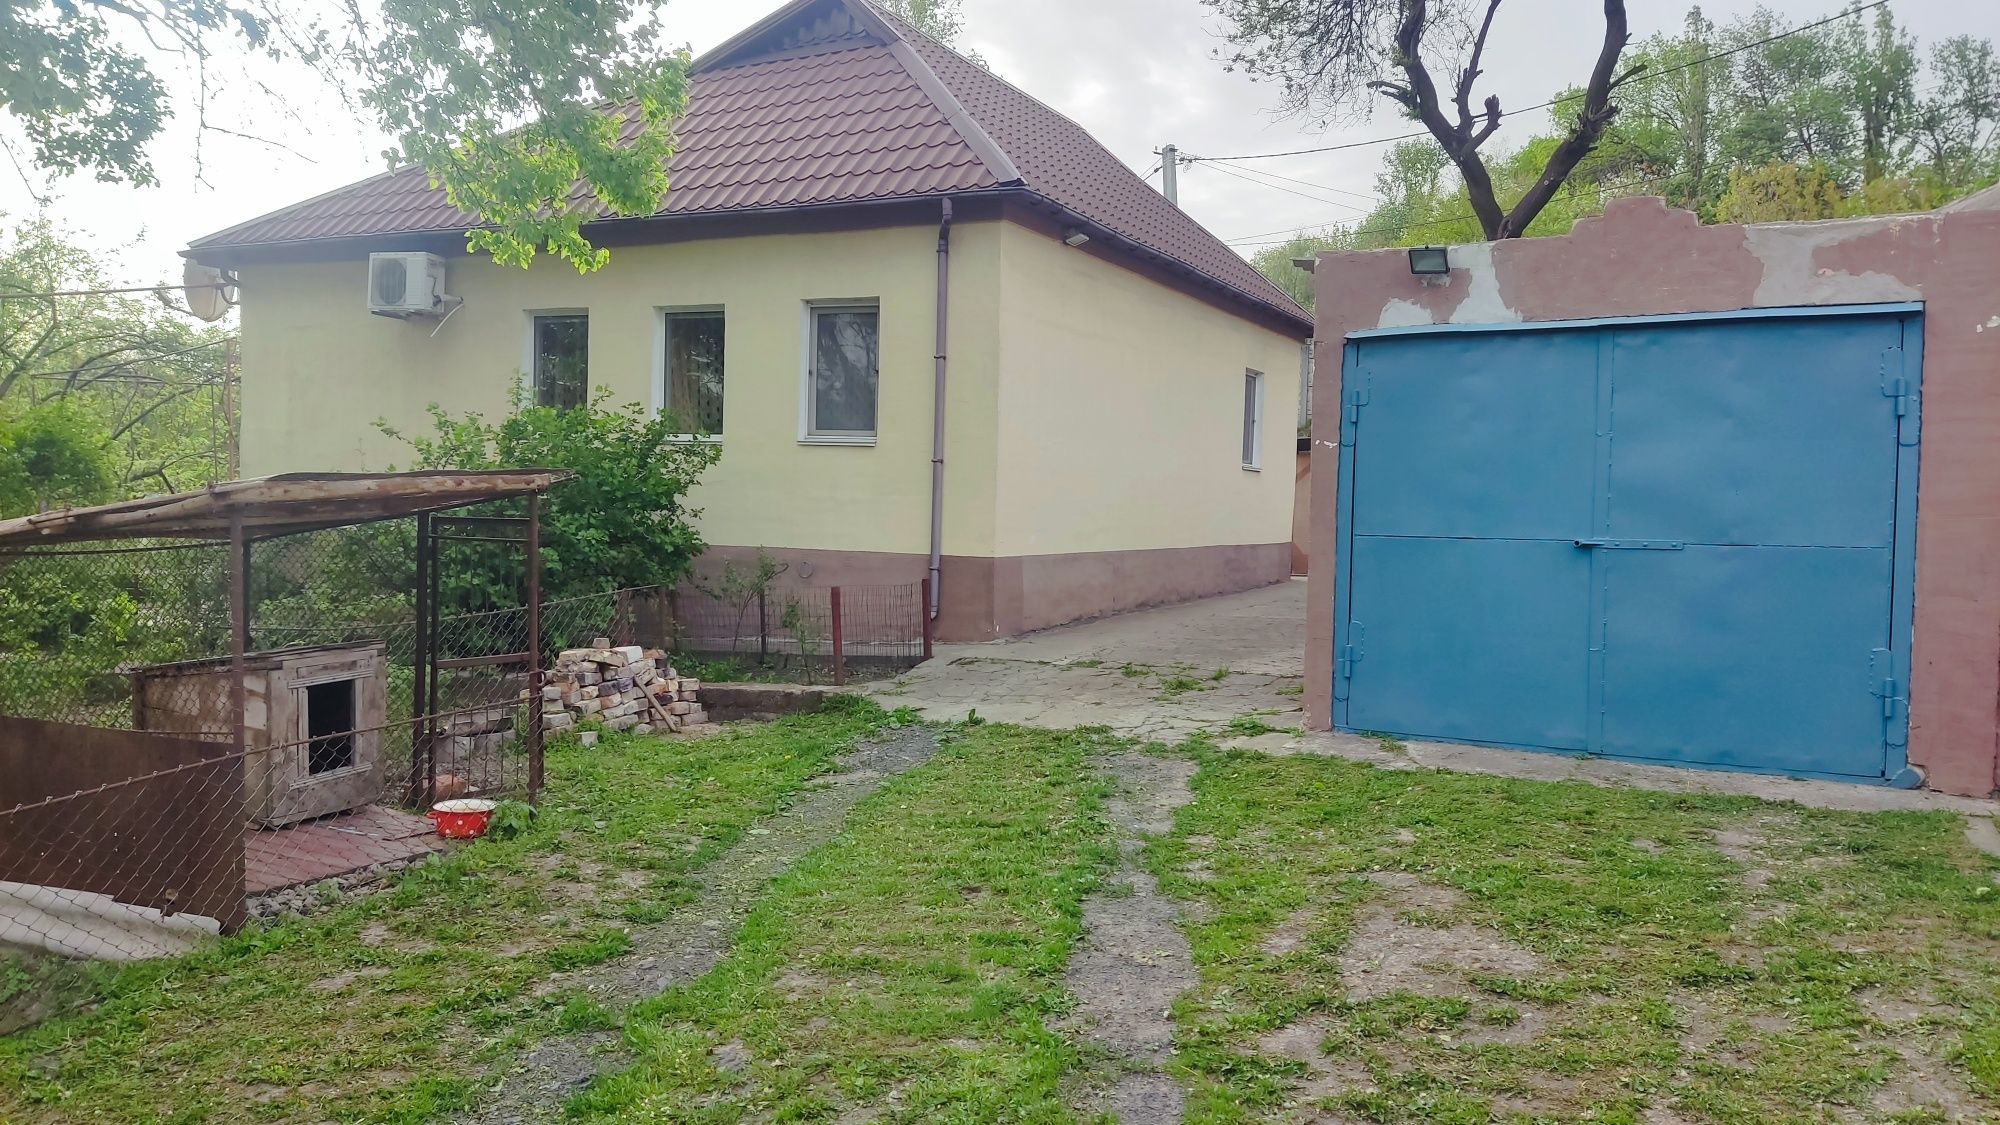 Продам дом в чечеловском районе